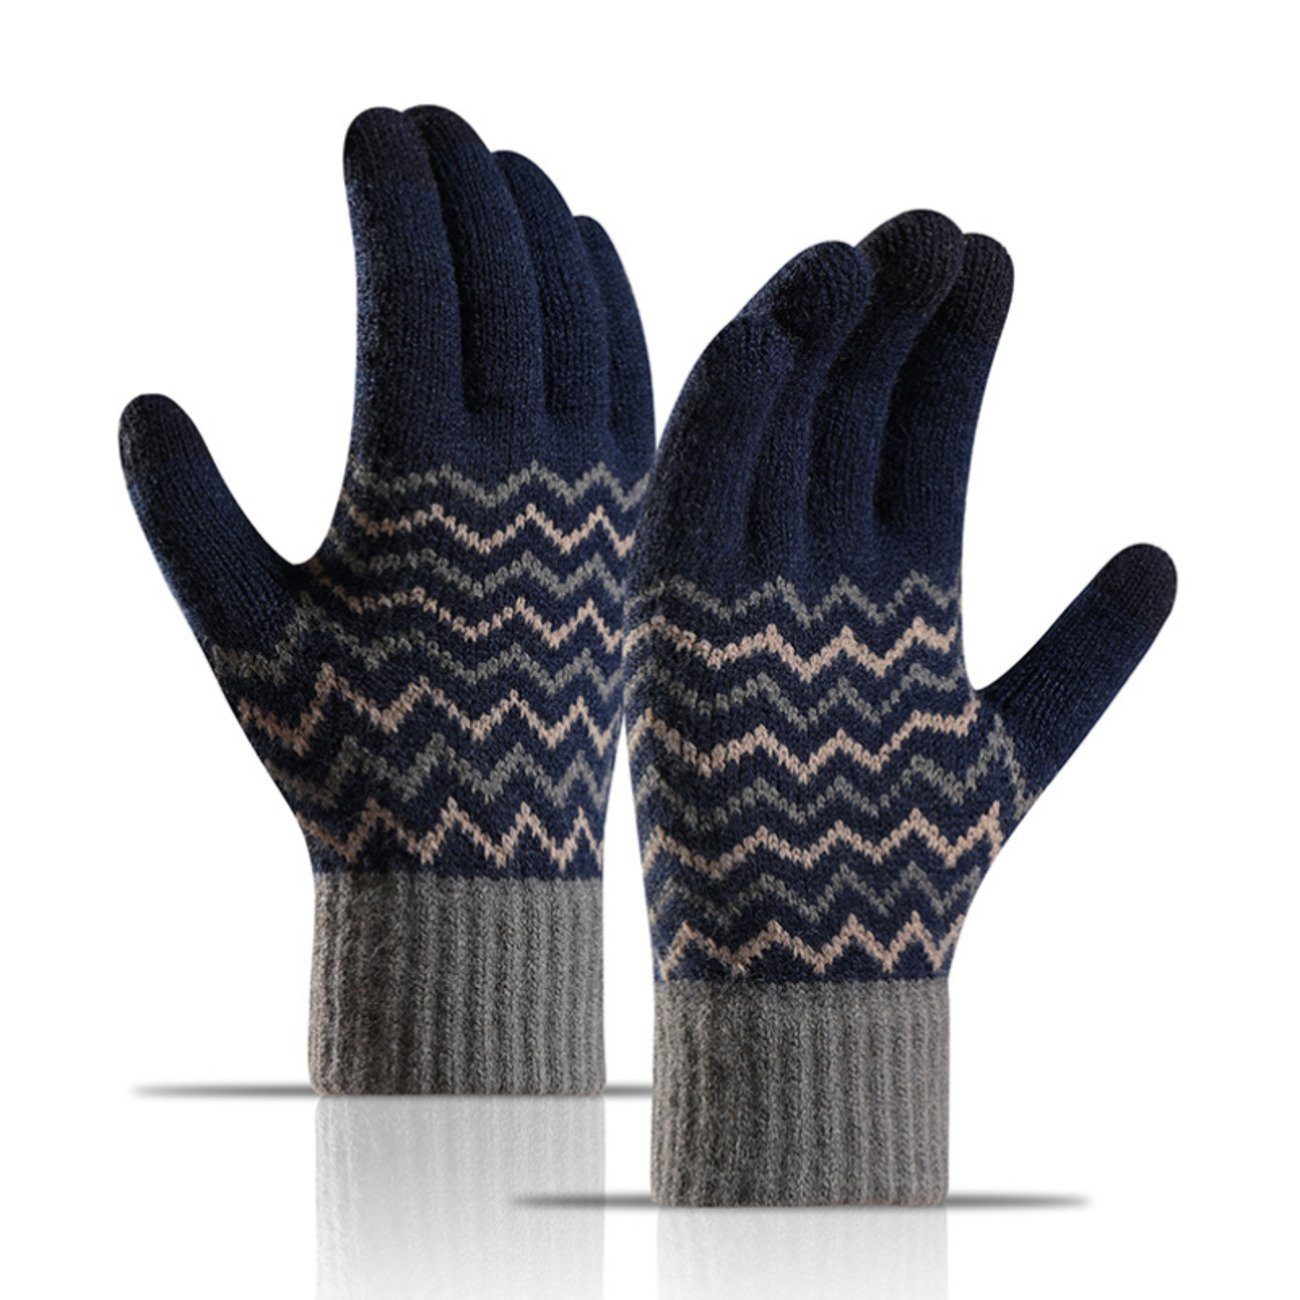 Union Reisen Strickhandschuhe Kältebeständige und warme Touchscreen-Strickhandschuhe für Herren blau